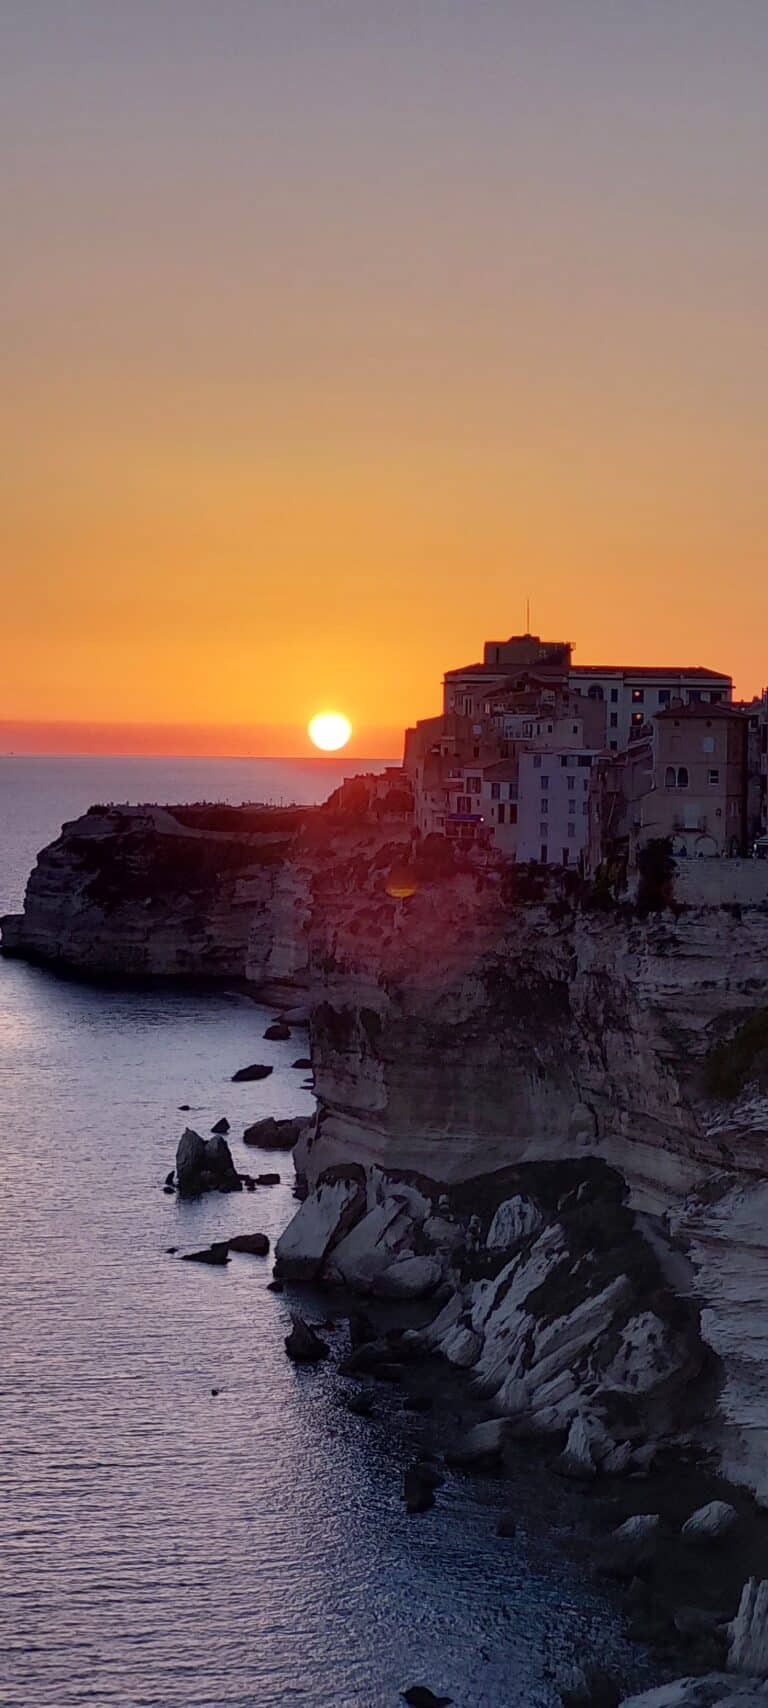 Sonnenuntergang über einer Küstenklippe mit Gebäuden auf der Spitze in Bonifacio, Korsika. Die Sonne ist teilweise untergegangen und wirft einen orangefarbenen und rosa Farbton über den Himmel, der sich im Meer darunter spiegelt. Im Wasser in der Nähe der schroffen Klippen sind Felsformationen sichtbar – die perfekte Kulisse für diejenigen, die einen Segelurlaub auf Sardinien planen.